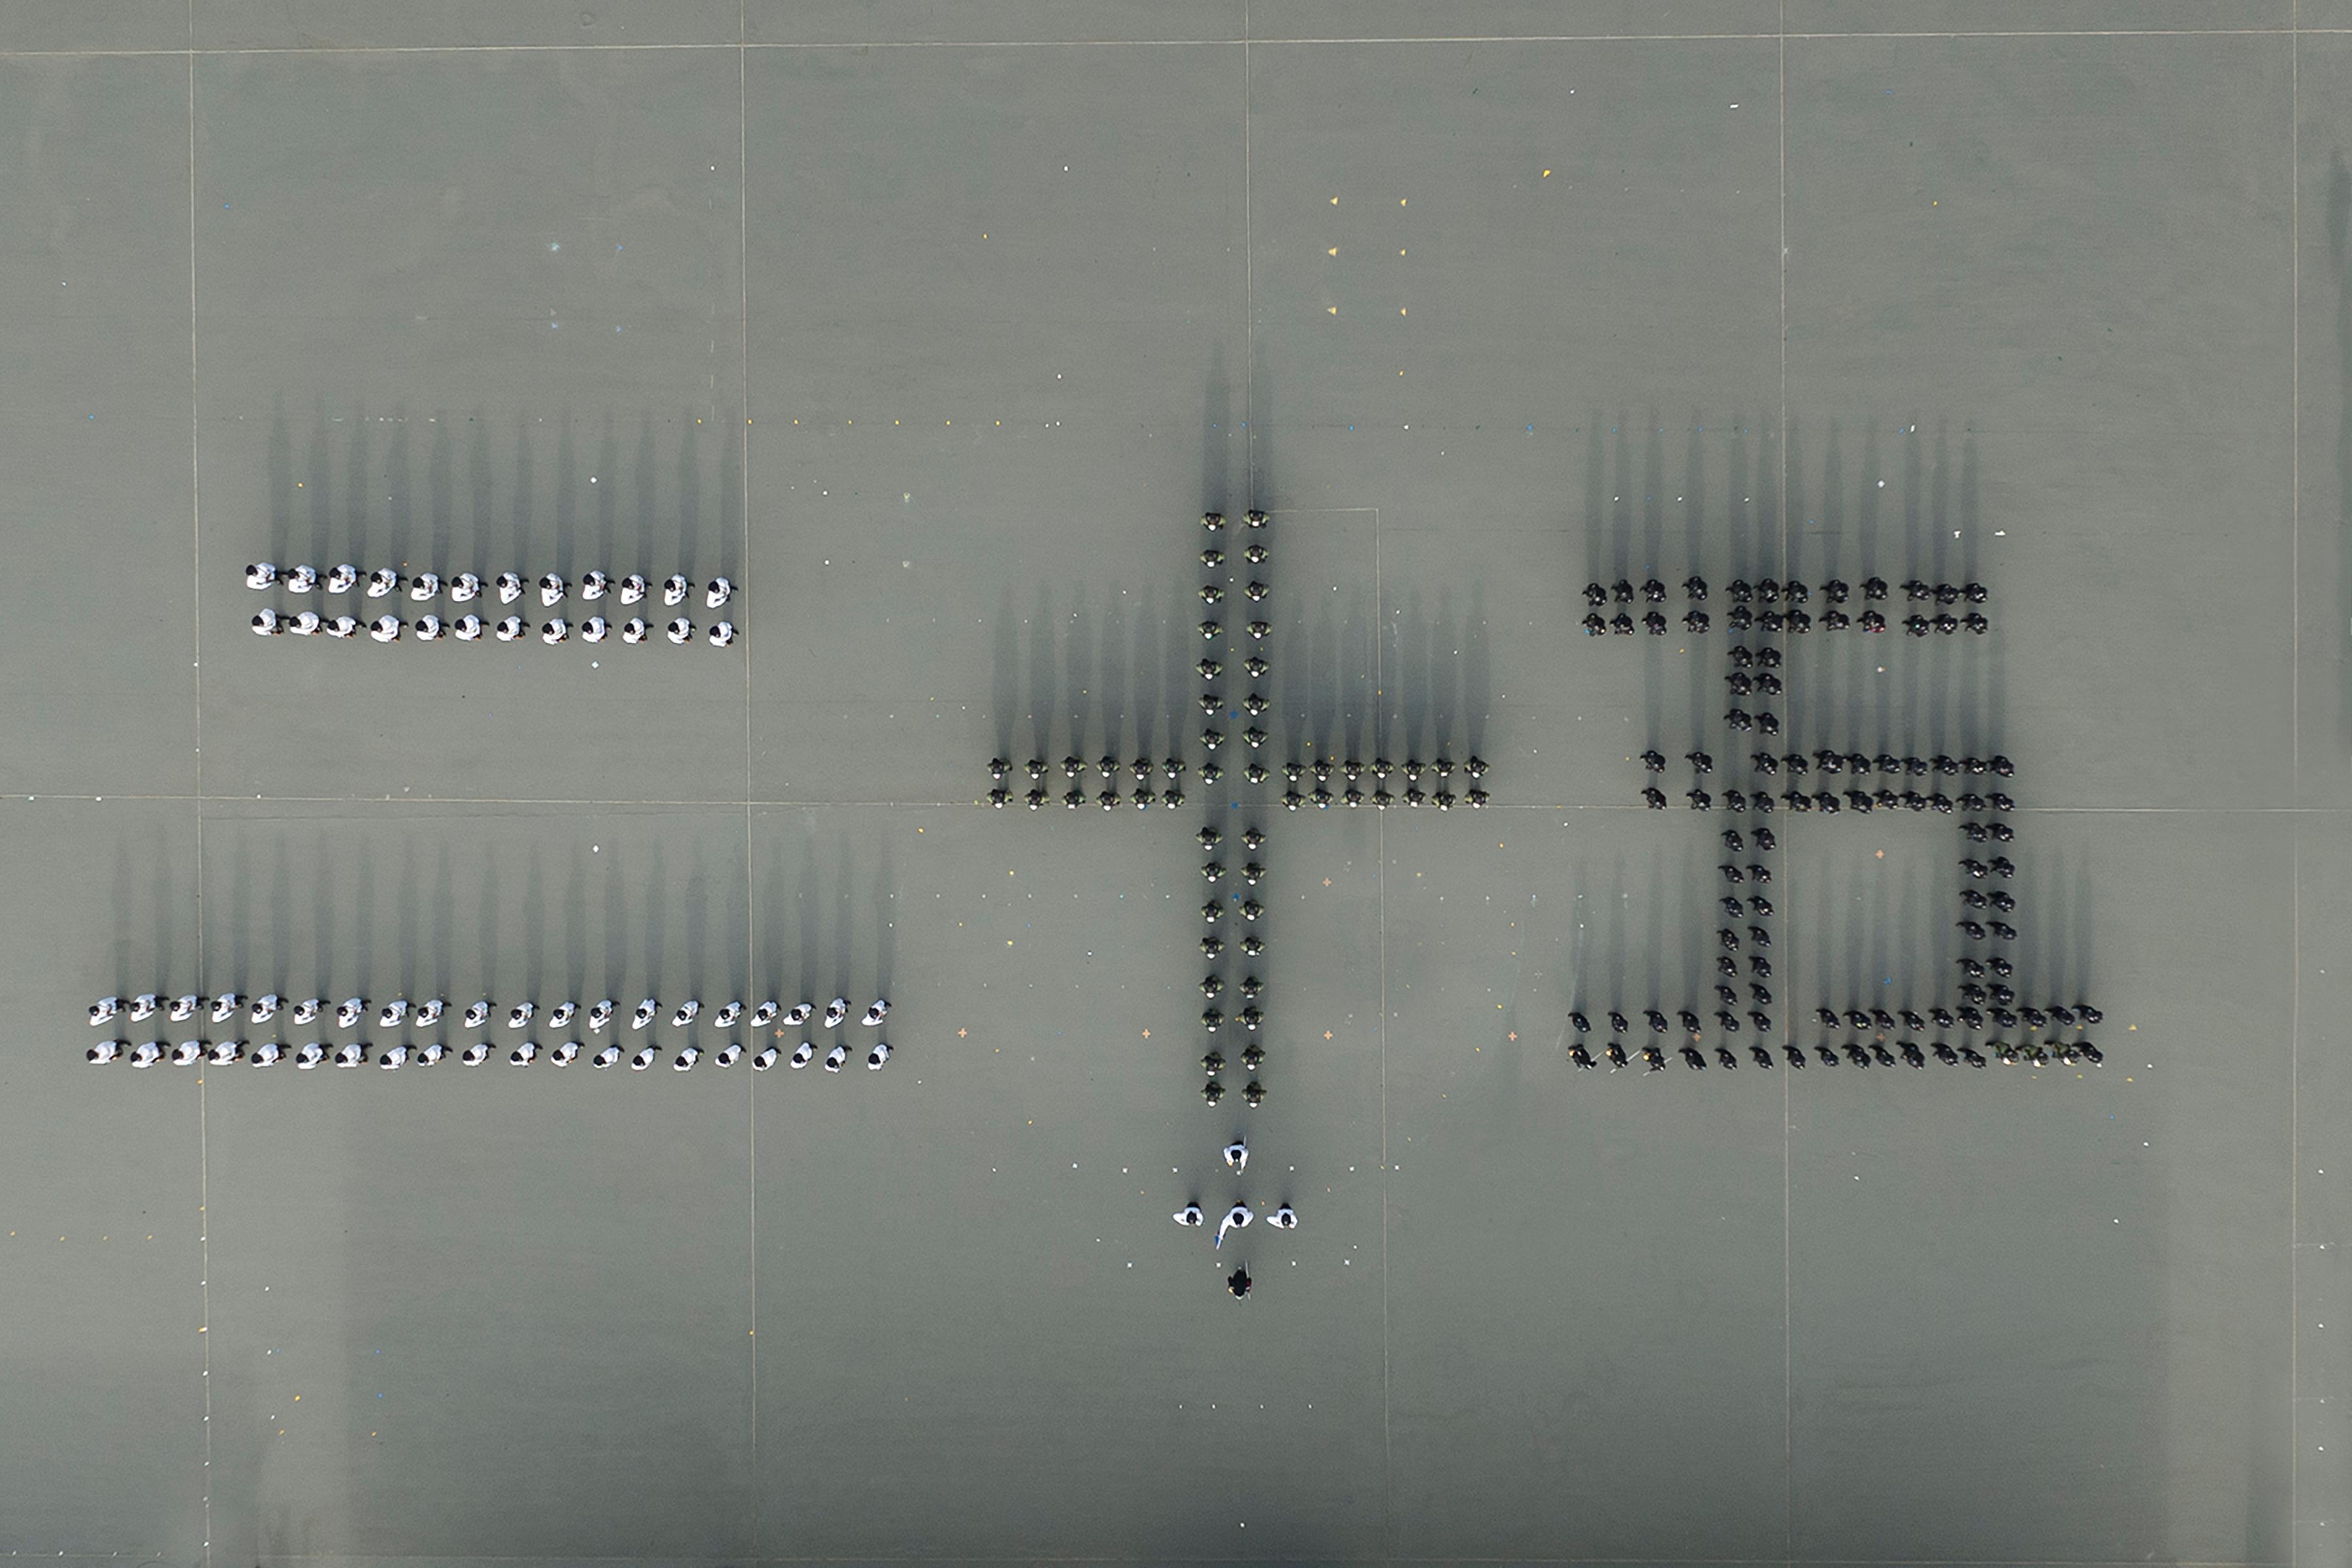 圖示會操隊伍以中式步操排列出中國數字「二十五」，以慶祝香港特別行政區成立二十五周年。